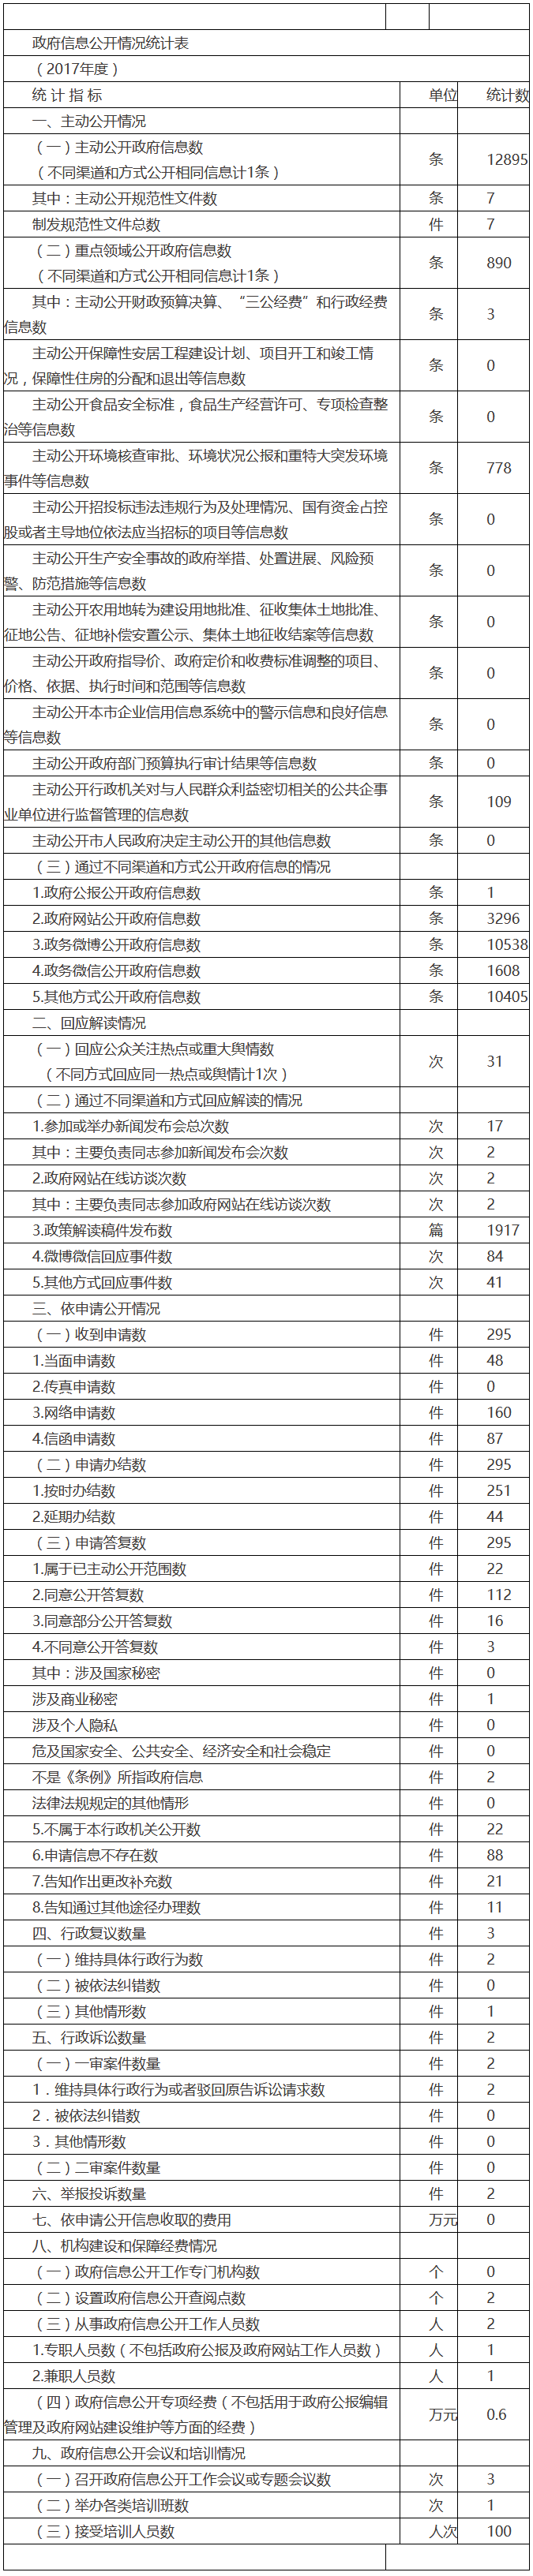 北京市环境保护局政府信息公开情况统计表(2017年度)